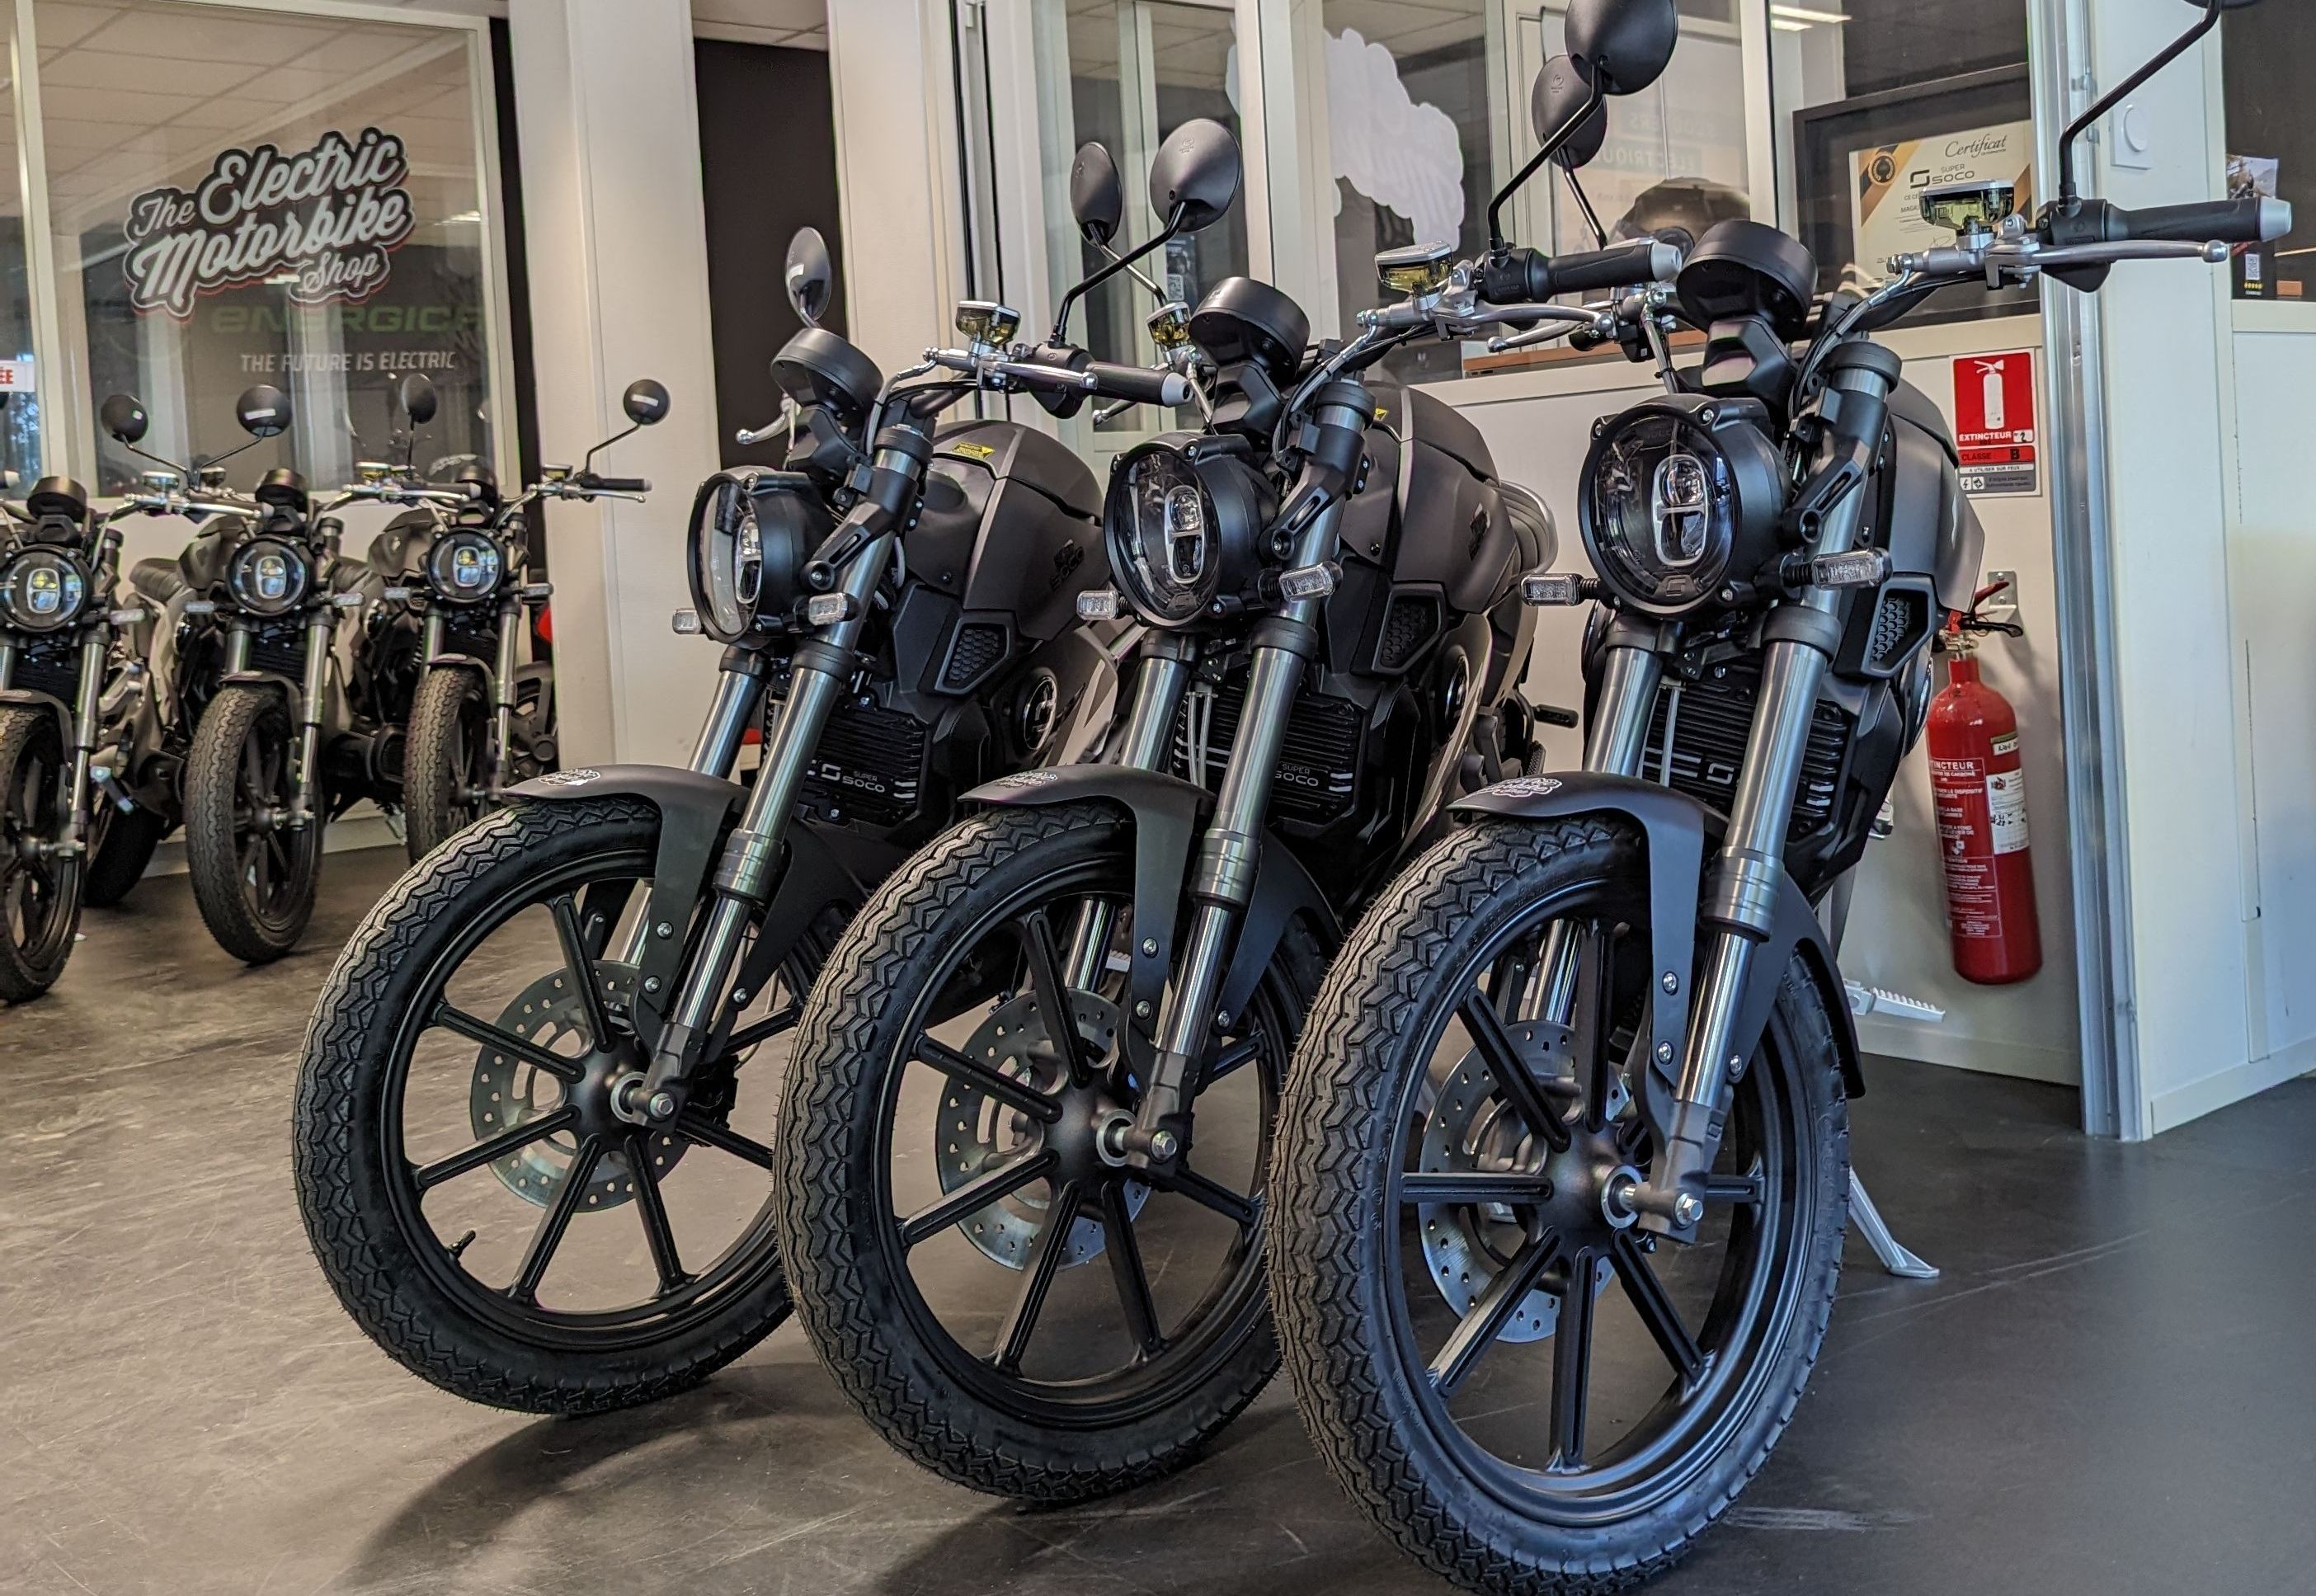 The Electric Motorbike Shop - Vente de motos électriques à Toulouse